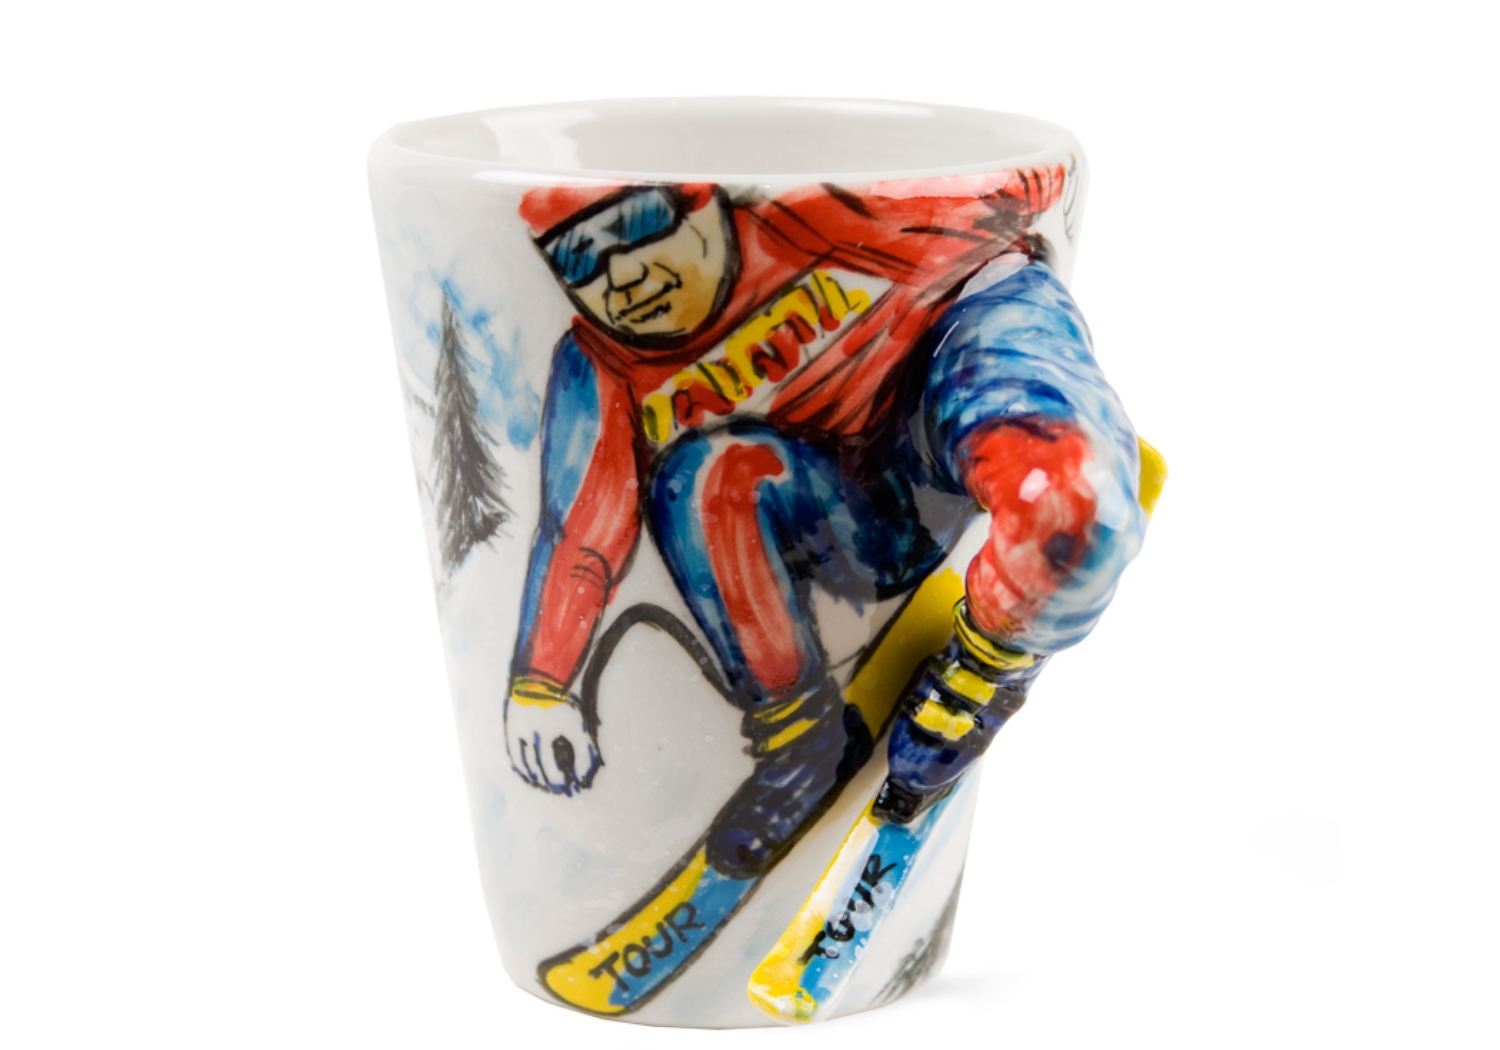 Ski Coffee Mug